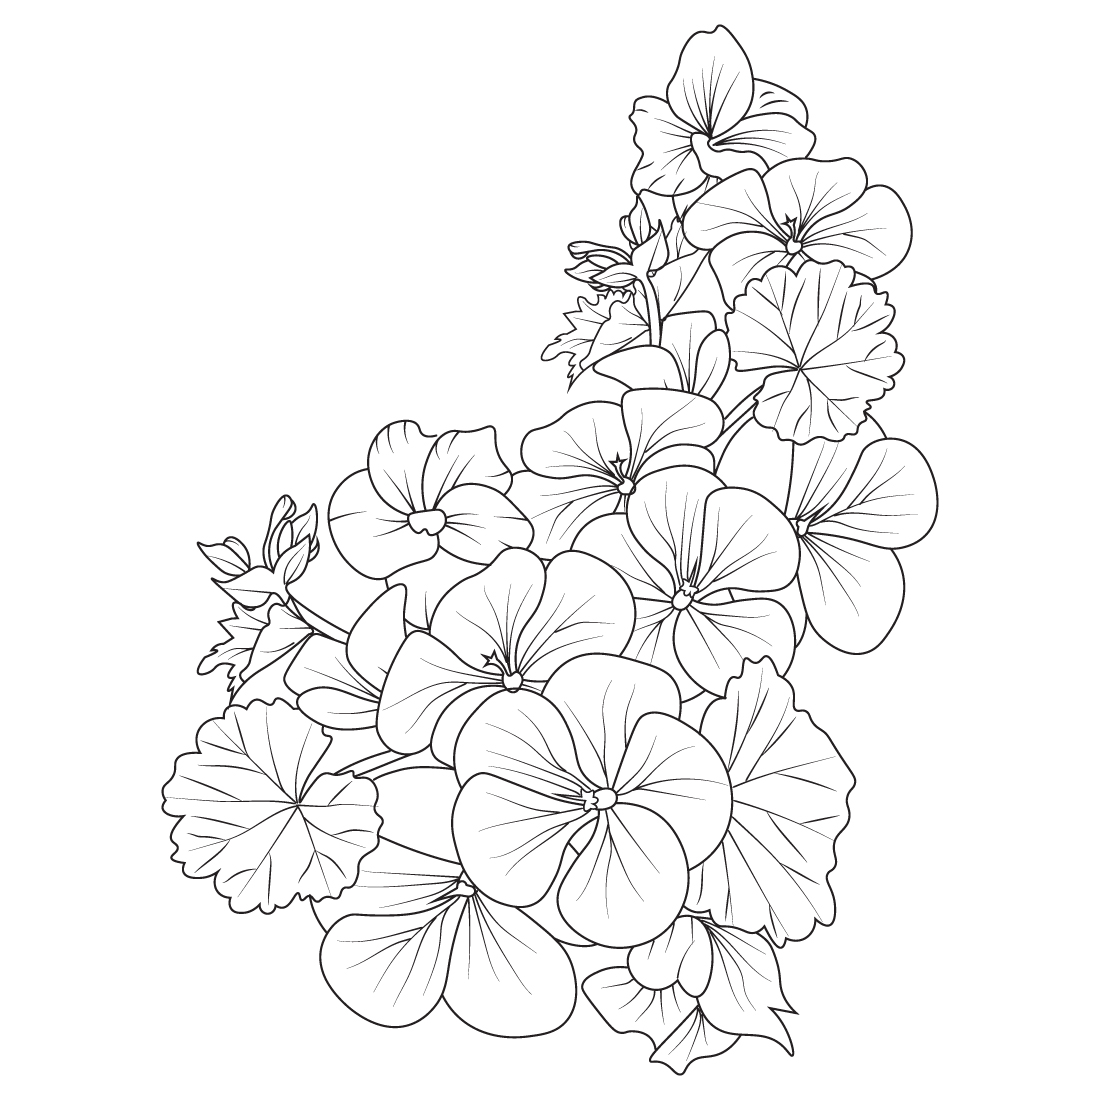 Geranium flower bouquet, pelargonium geranium, geranium drawing, geranium drawing easy, flower cluster drawing Easy flower coloring pages, Cute flower coloring pages, cover image.